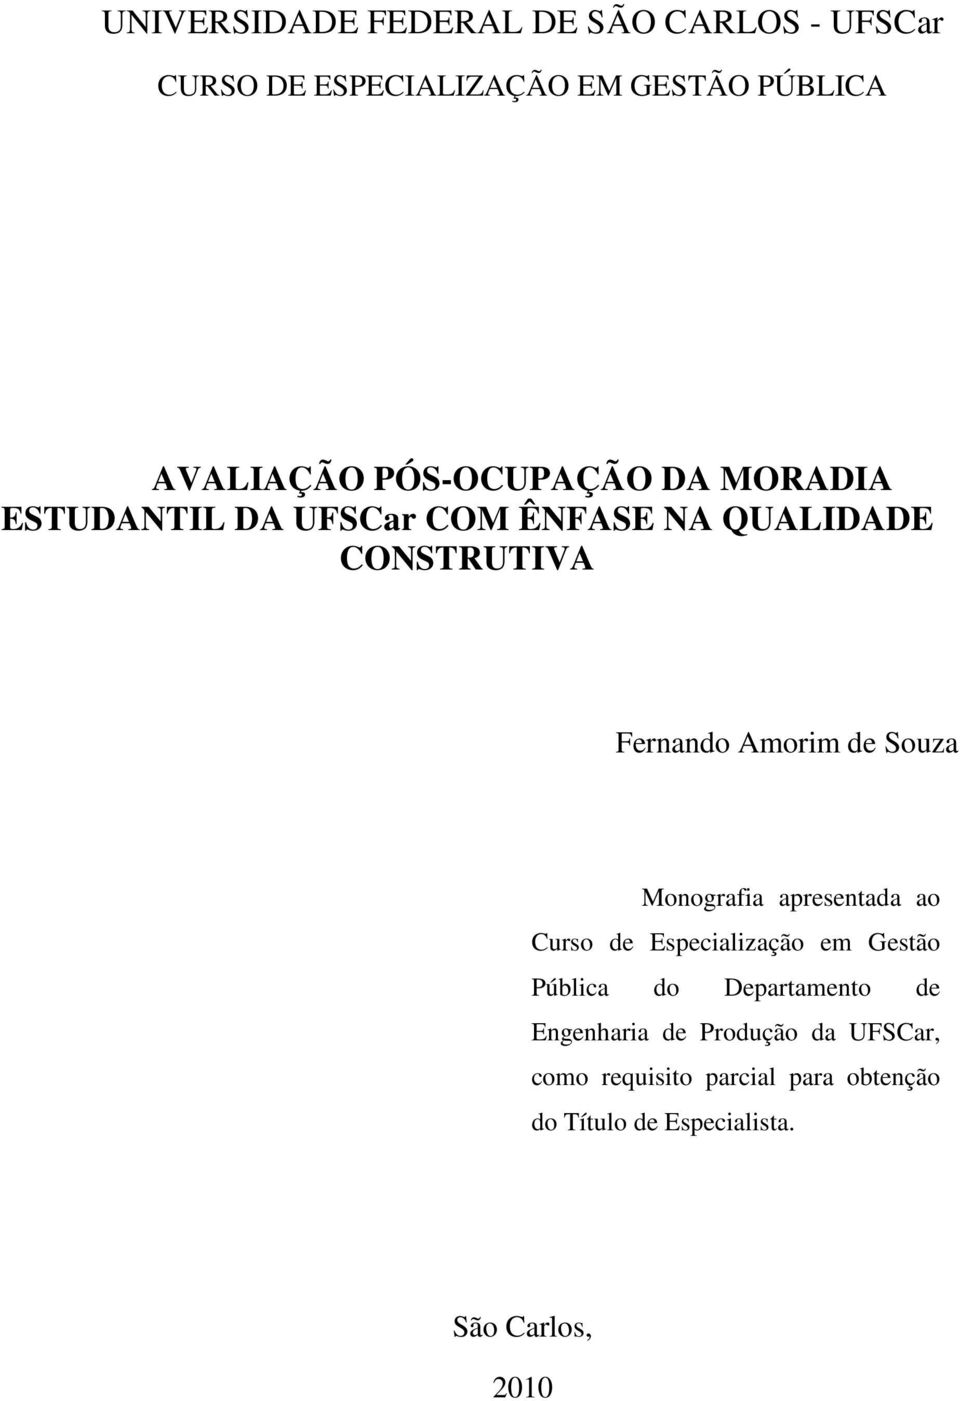 Souza Monografia apresentada ao Curso de Especialização em Gestão Pública do Departamento de